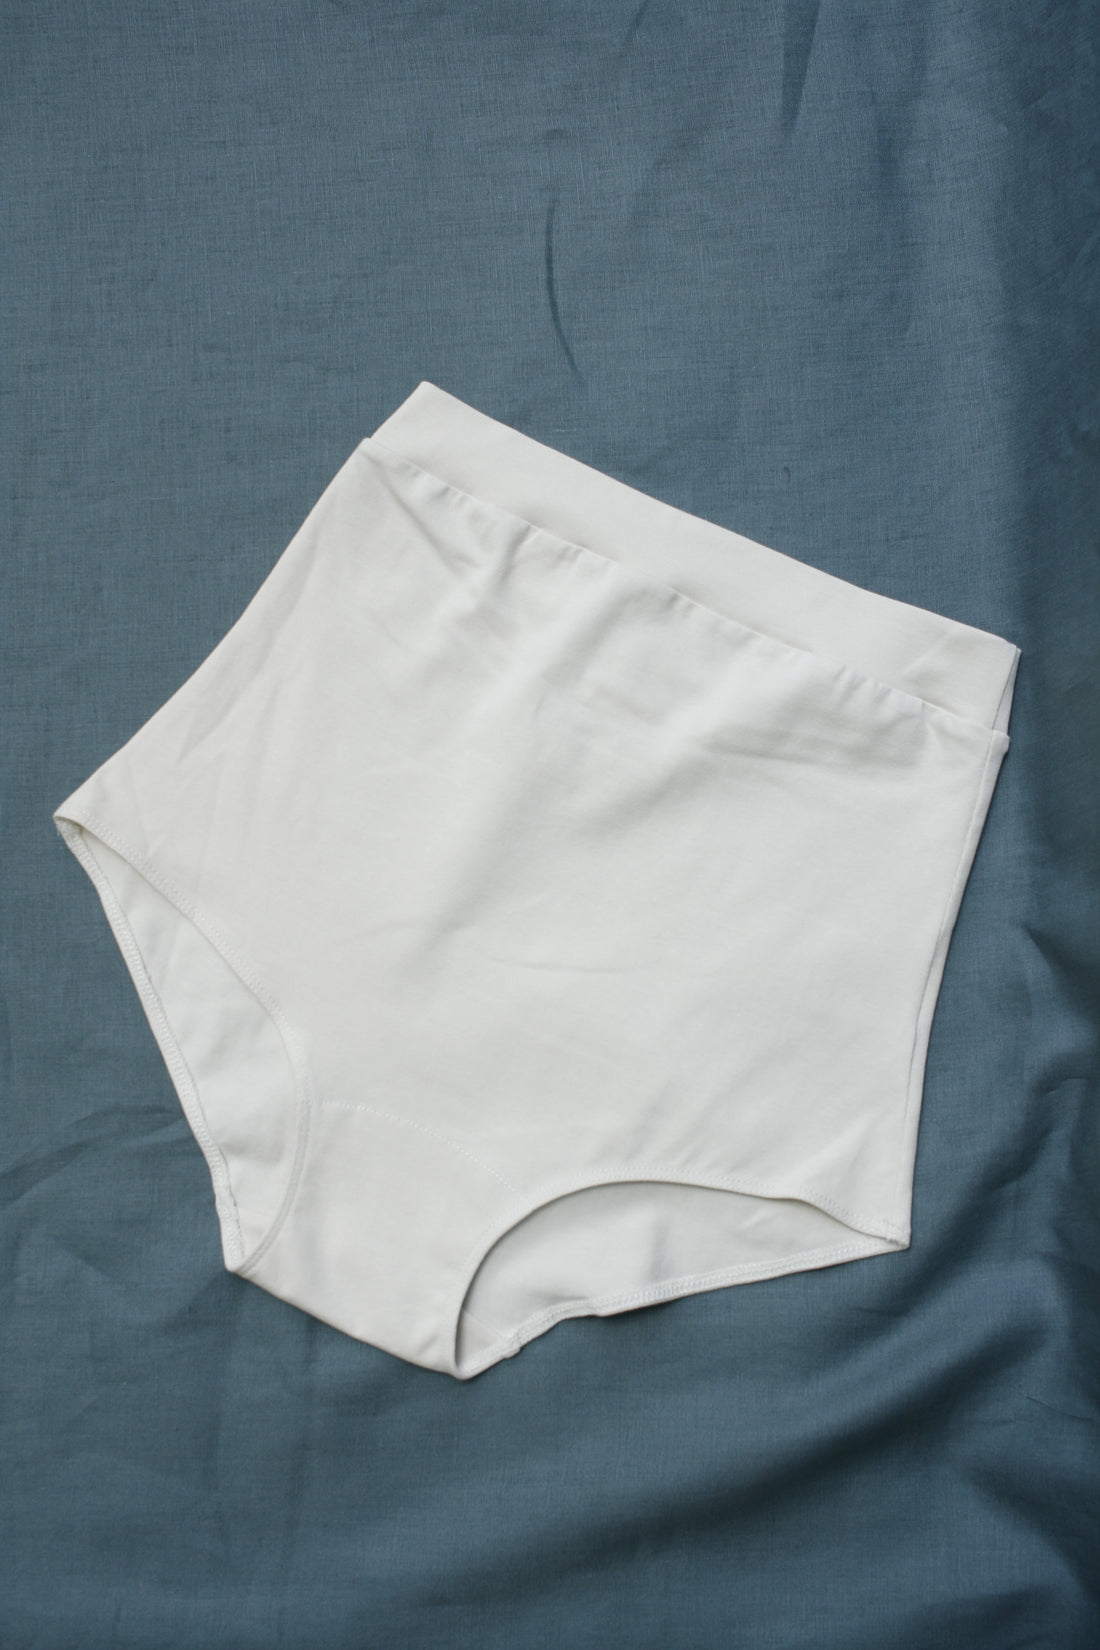 VBARHMQRT Womens Underwear High Waist Thong Pure Cotton Underwear